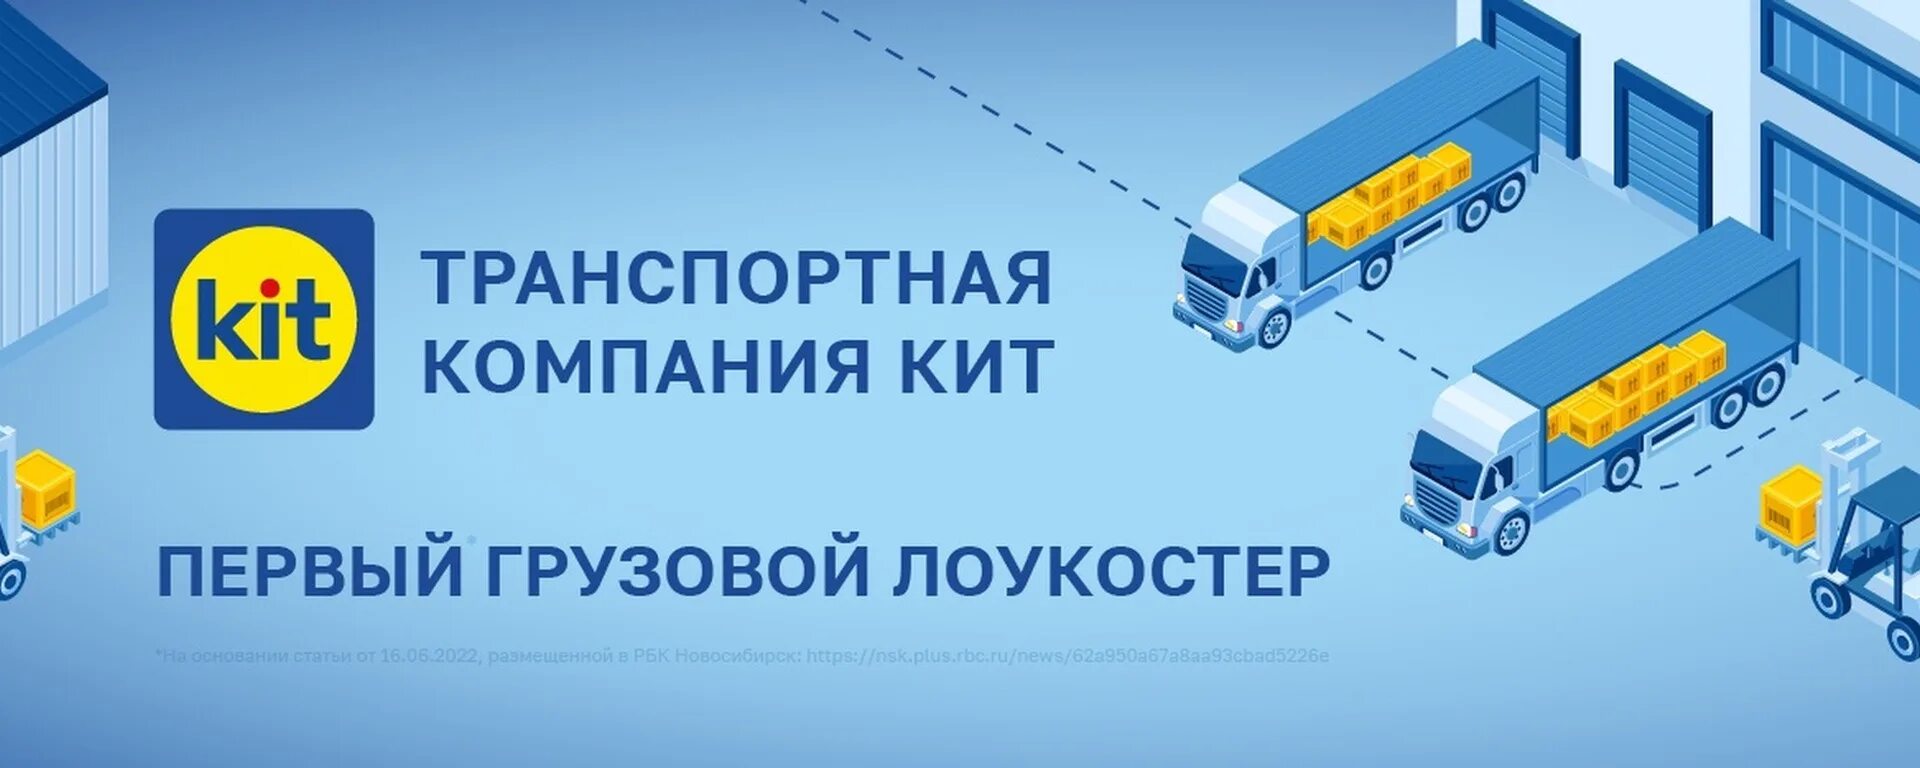 Тк кит г. Kit транспортная компания. Кит транспортная компания Барнаул. Транспортная компания кит Курск. Кит ТК грузовик.